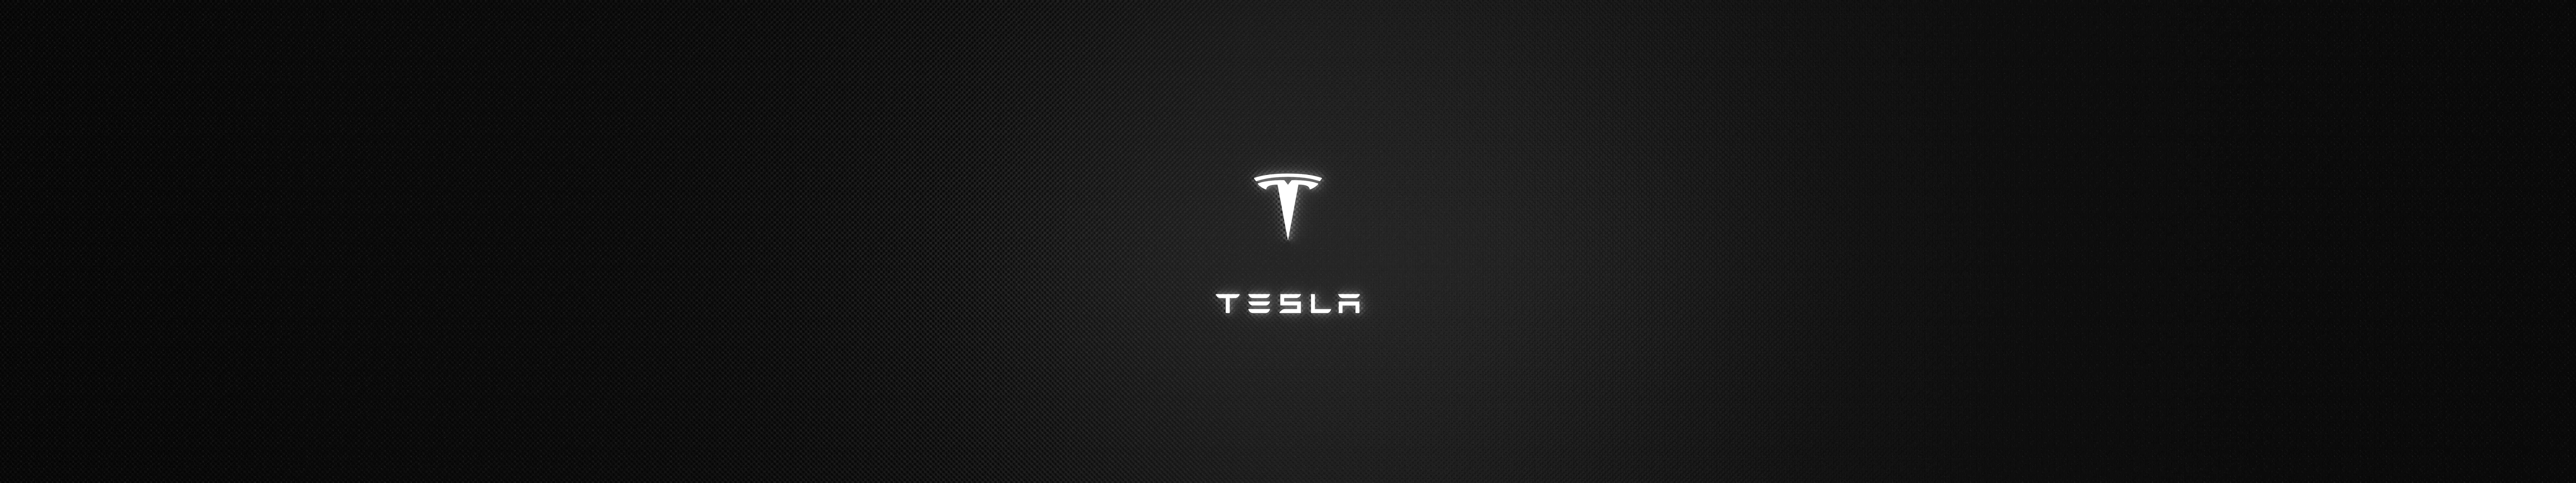 Teslalogo mørk triple skærm tapet Wallpaper